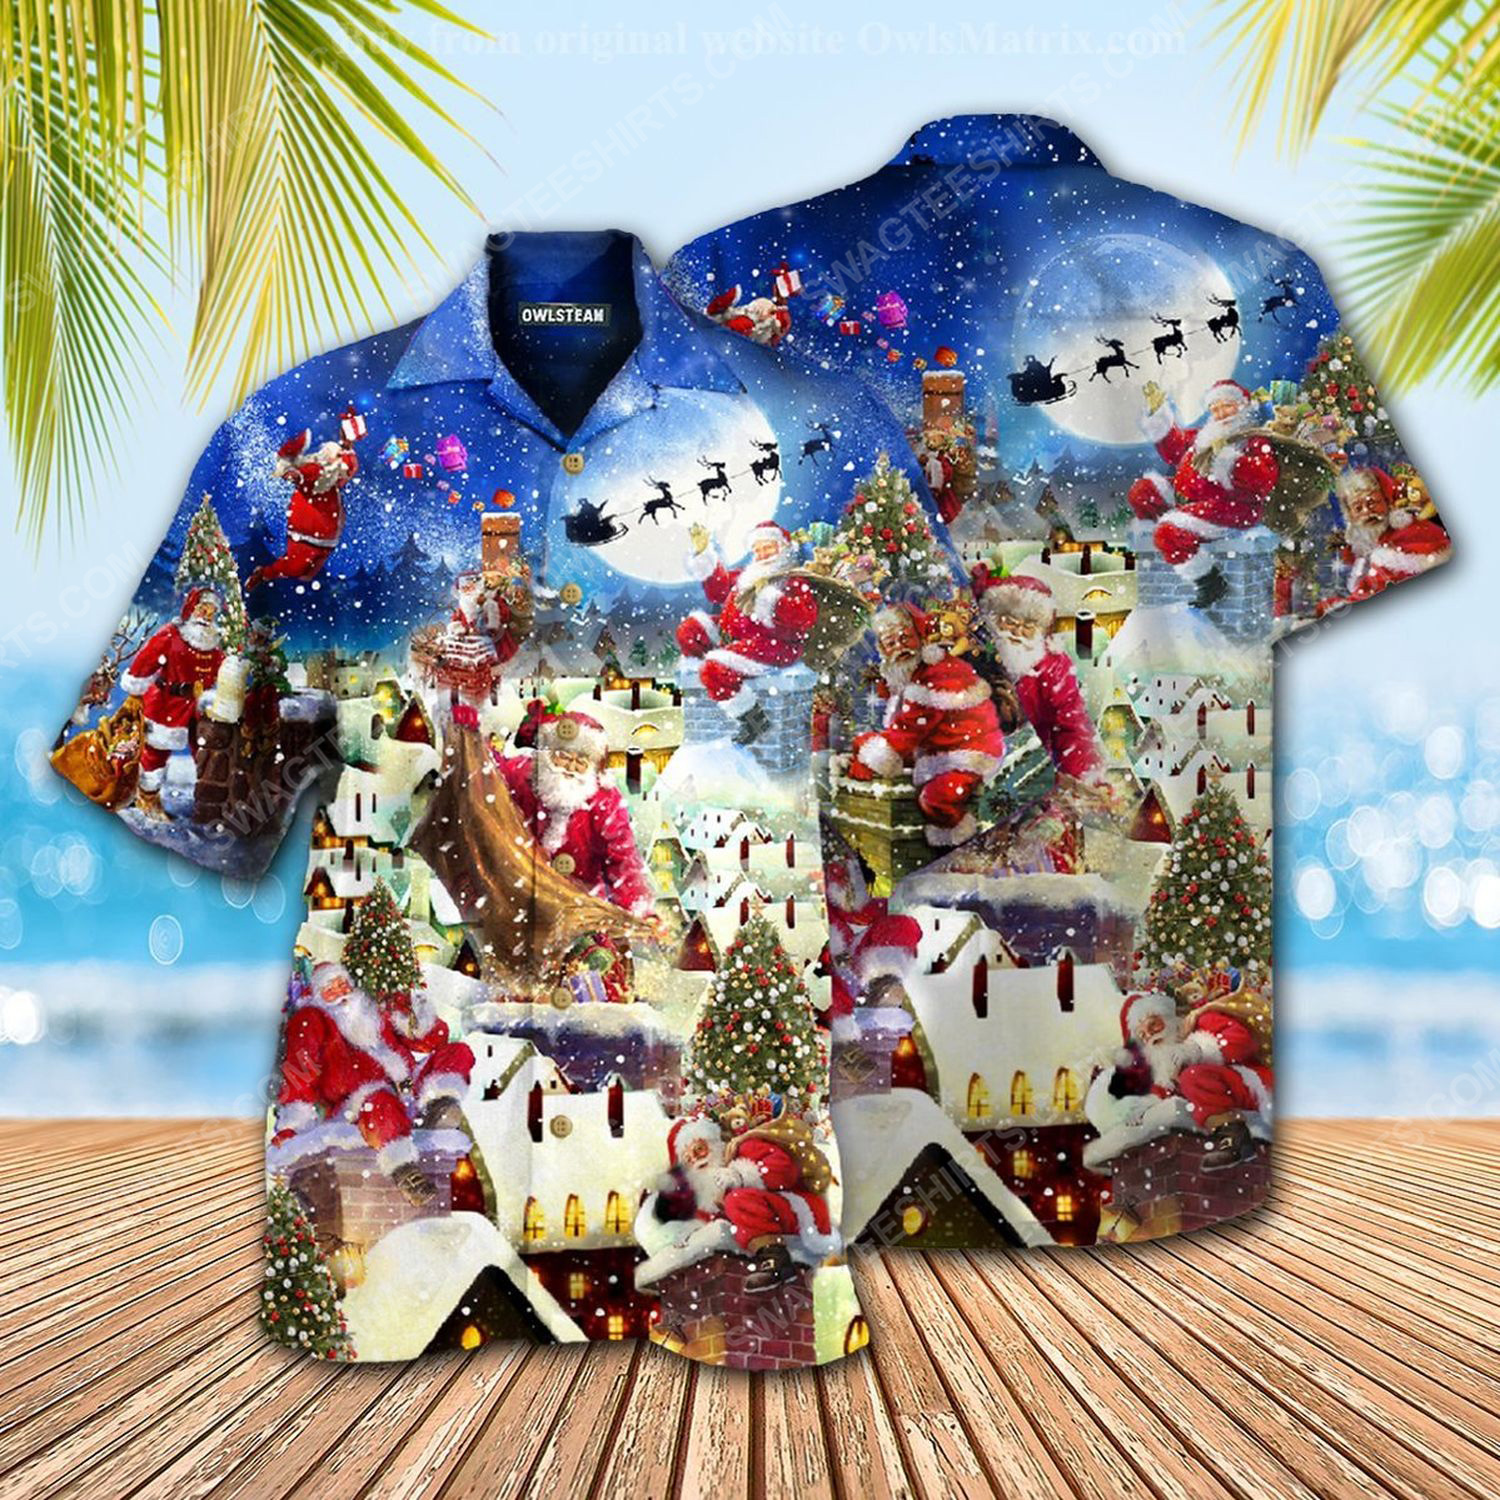 [special edition] Christmas holiday santa claus can deliver presents hawaiian shirt – maria